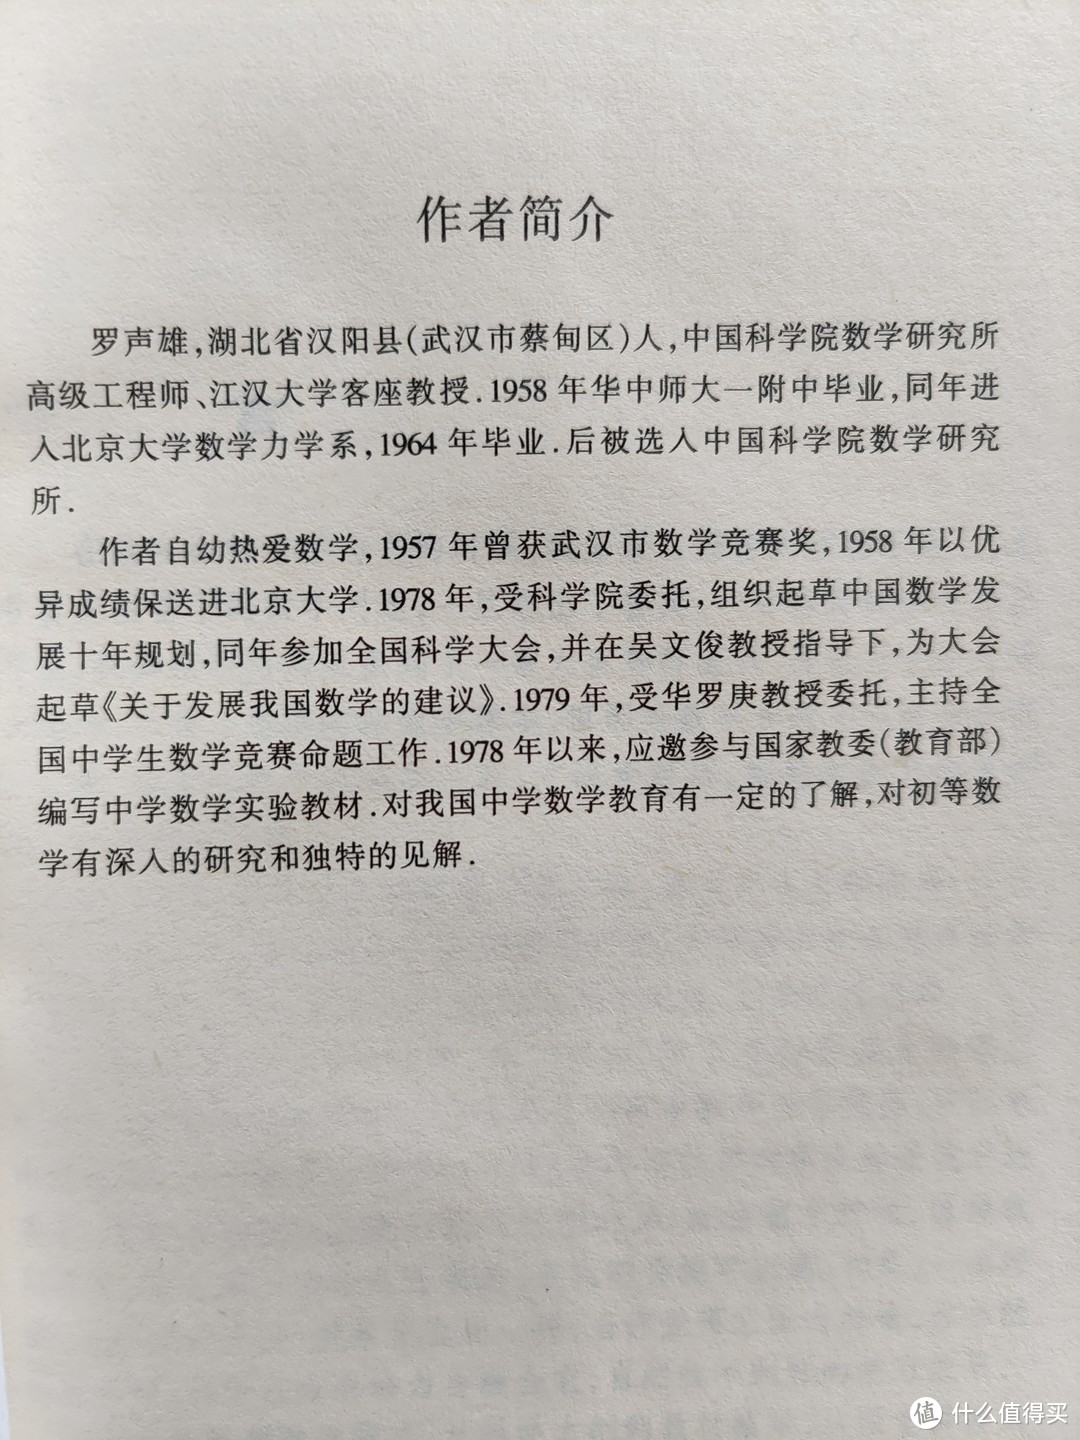 武汉出版社《数学的魅力——初等数学概念演绎》小晒